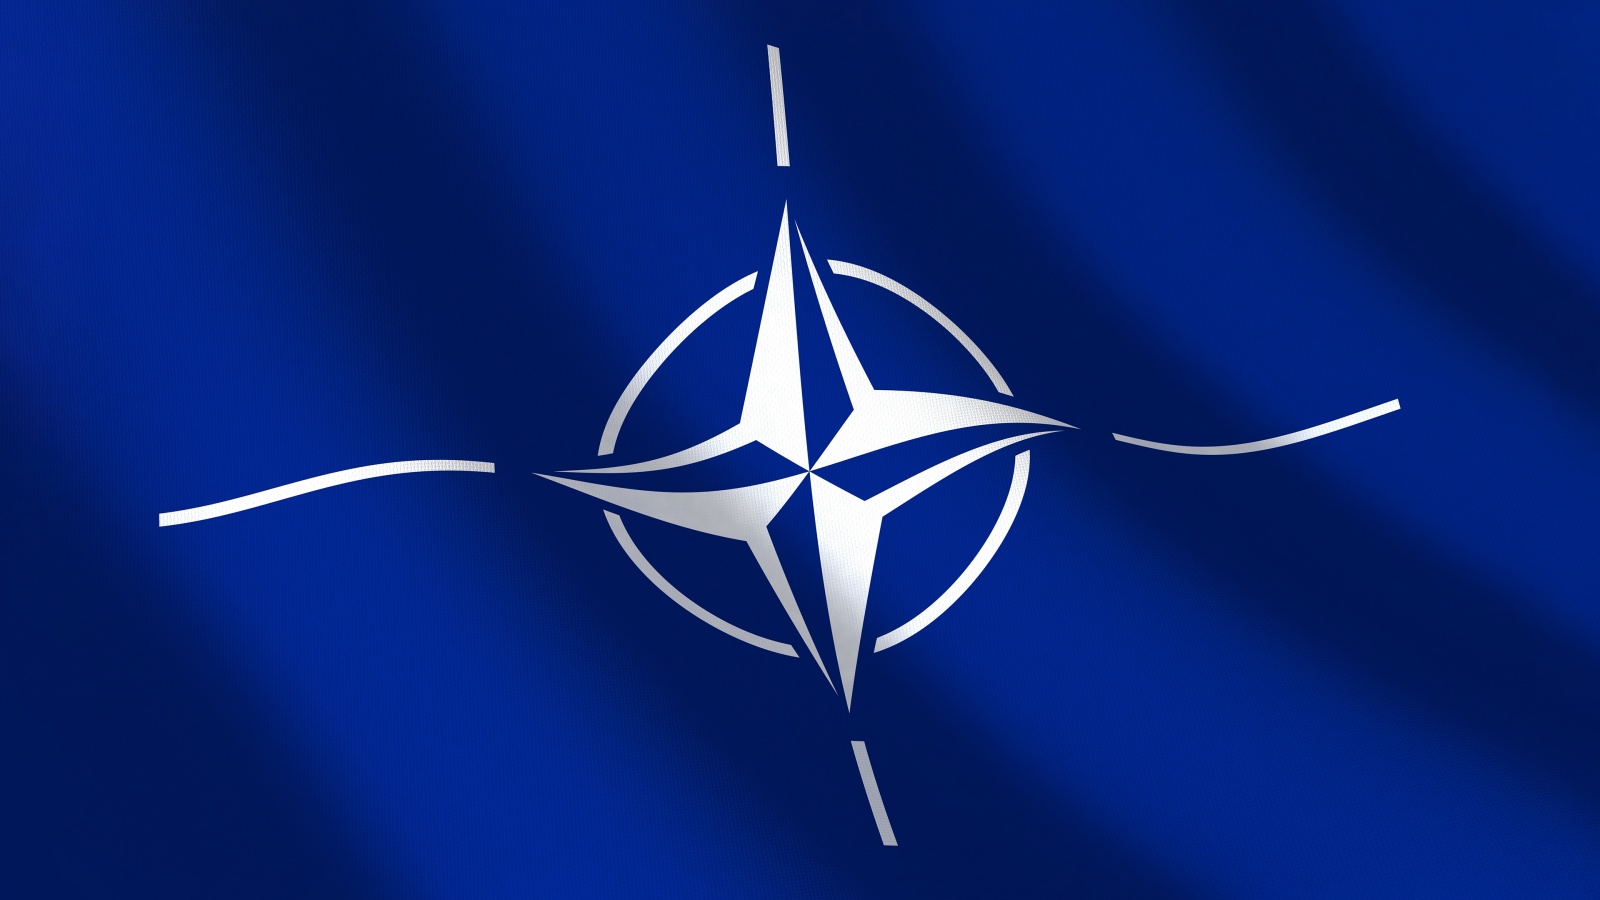 NATO a Derulat Exercitiul BALTOPS222 in Colaborare cu Suedia